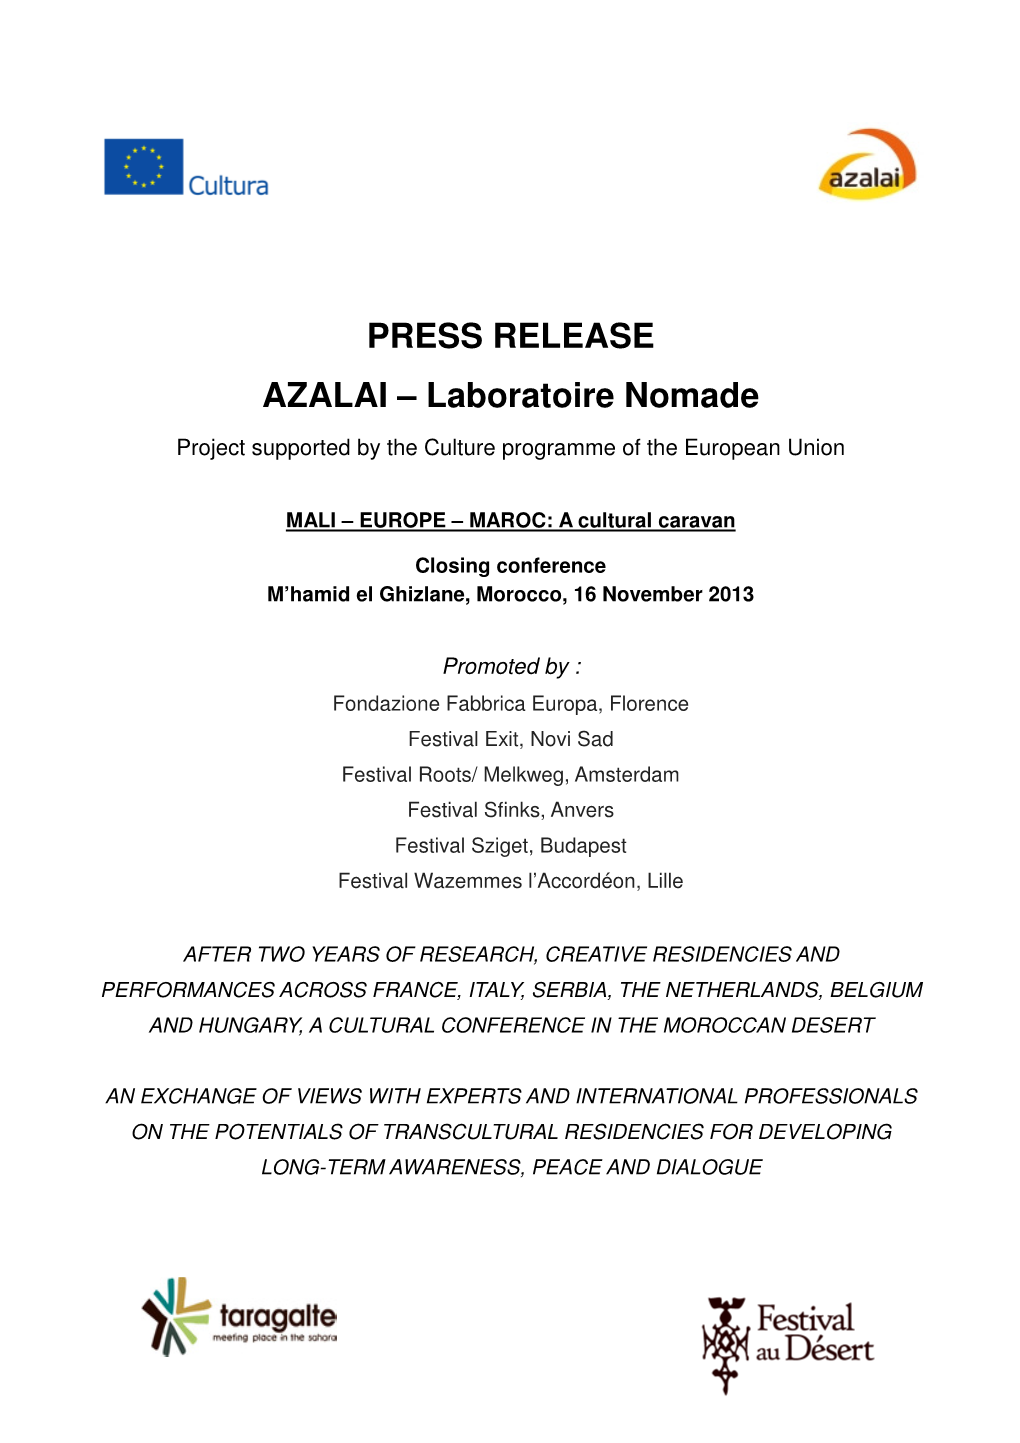 PRESS RELEASE AZALAI – Laboratoire Nomade